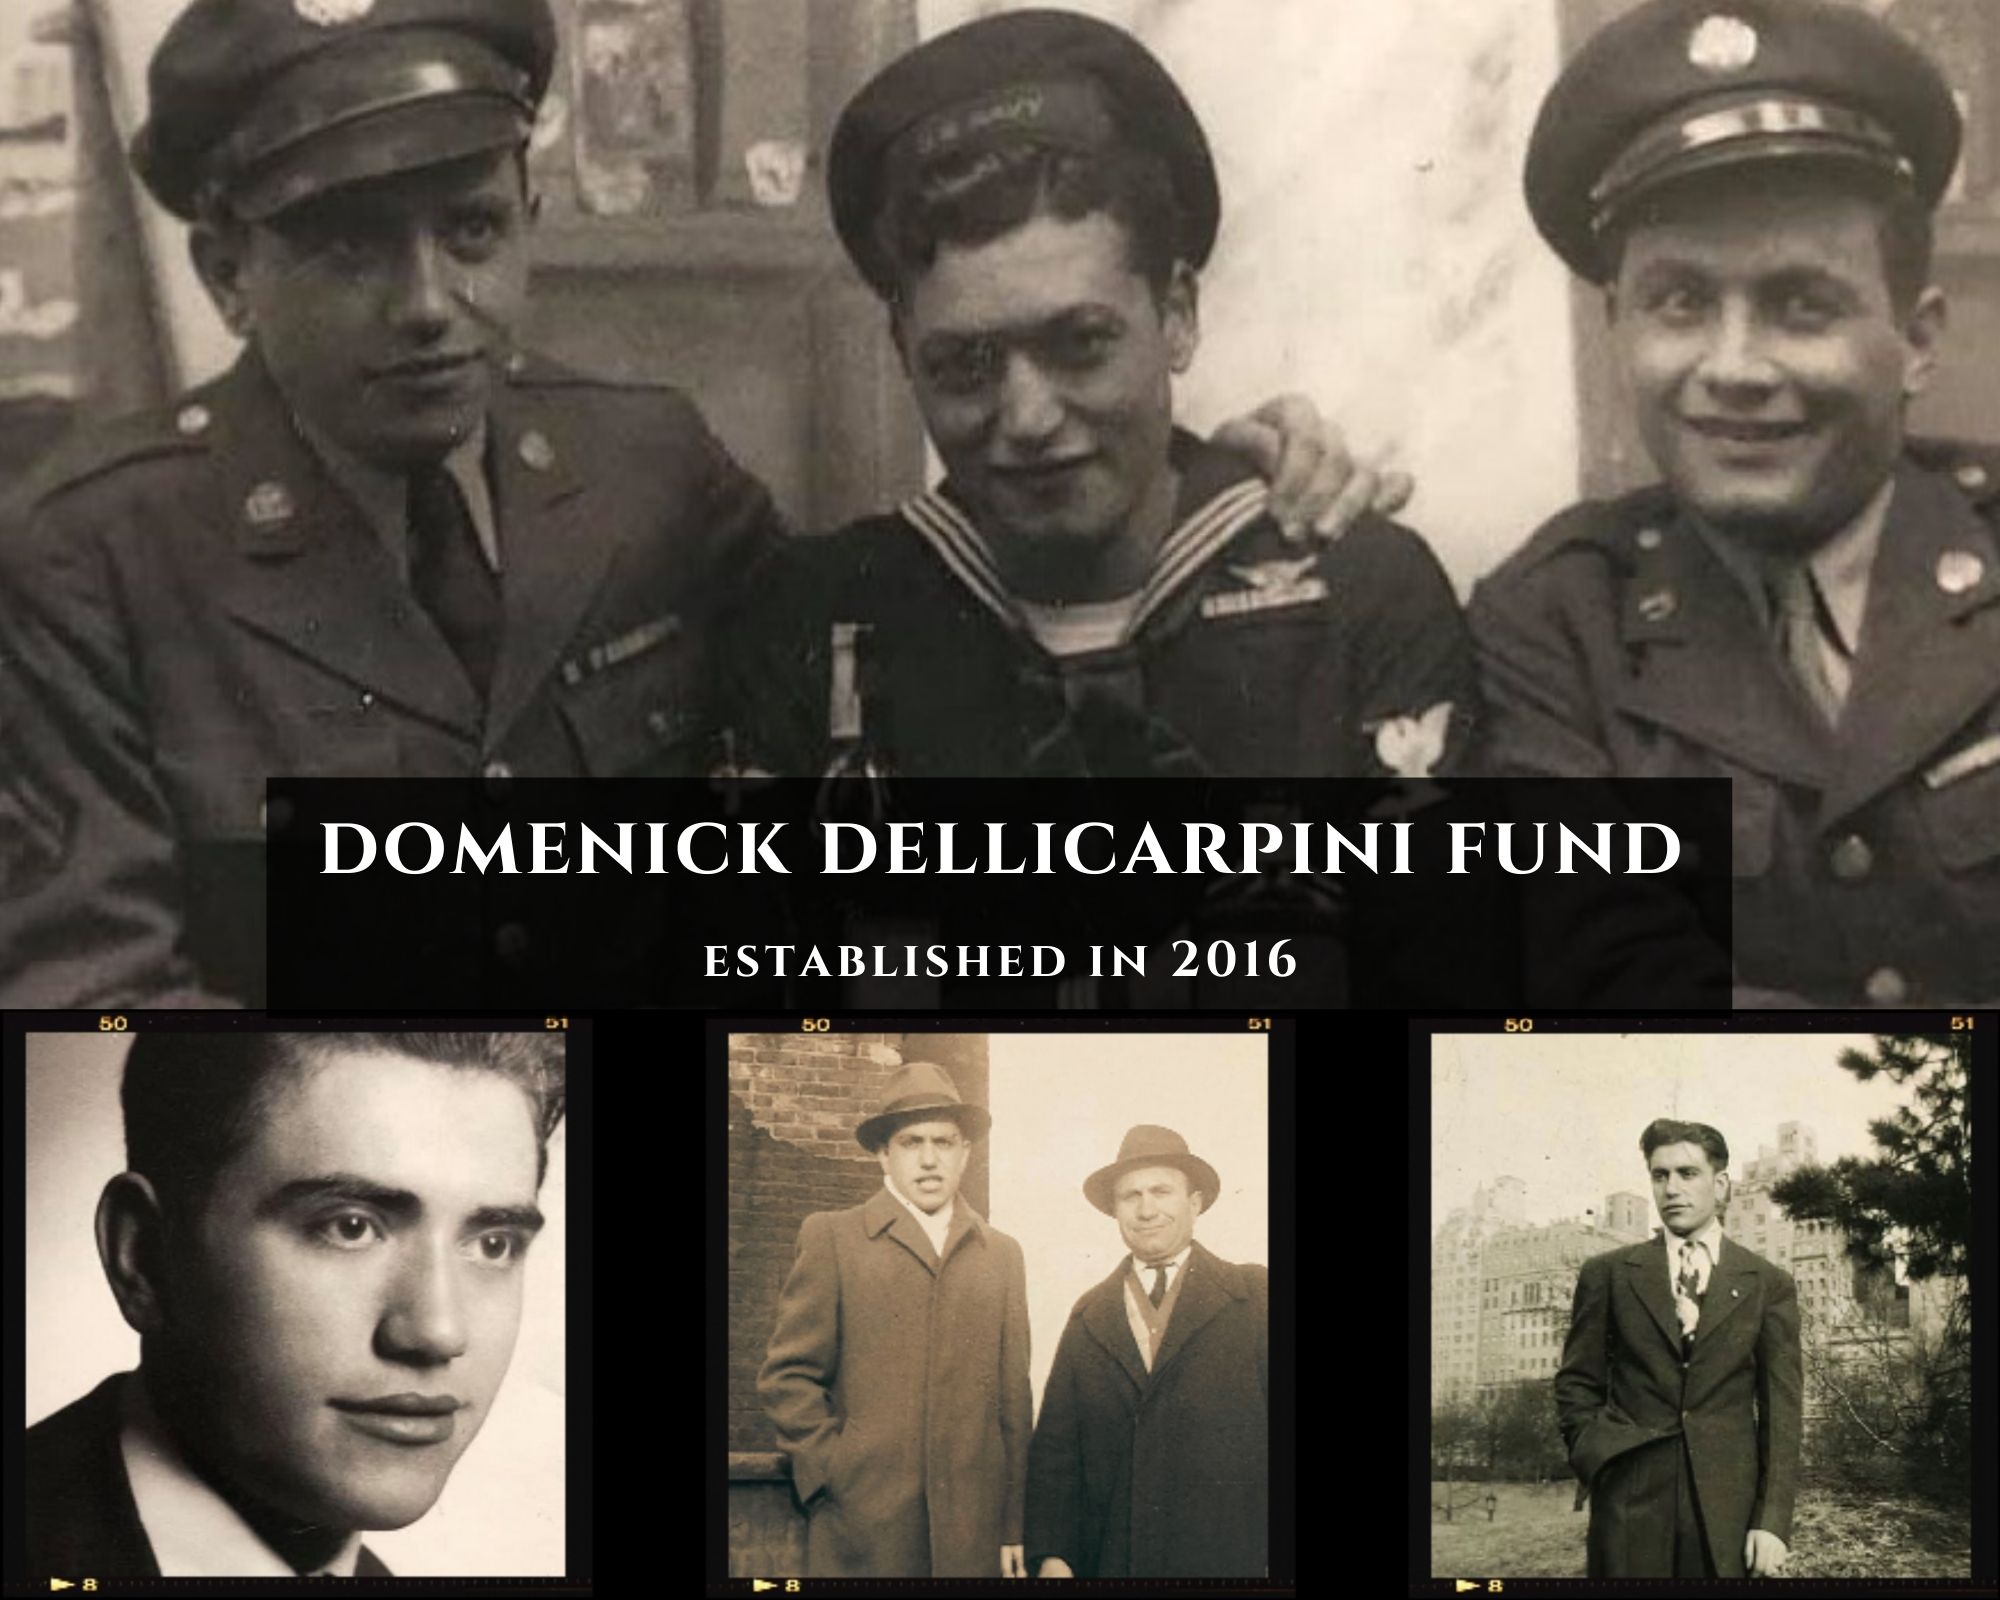 Domenick DelliCarpini - An Immigrant's Legacy of Dedication